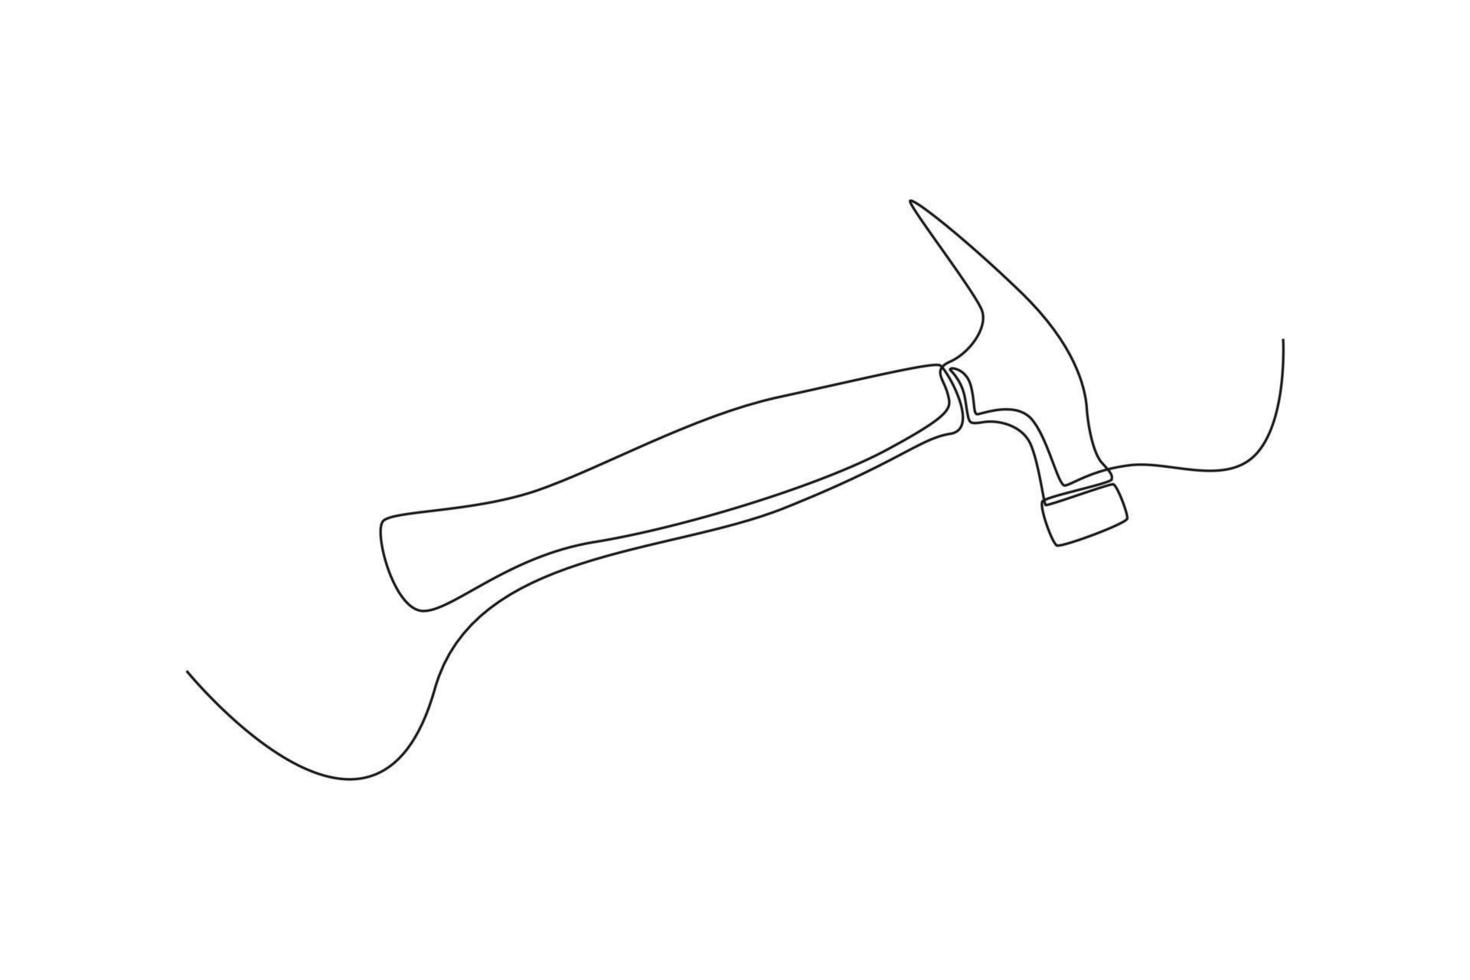 martelo de desenho contínuo de uma linha usa para bater pregos. conceito de construção e construção. única linha desenhar desenho ilustração gráfica de vetor. vetor